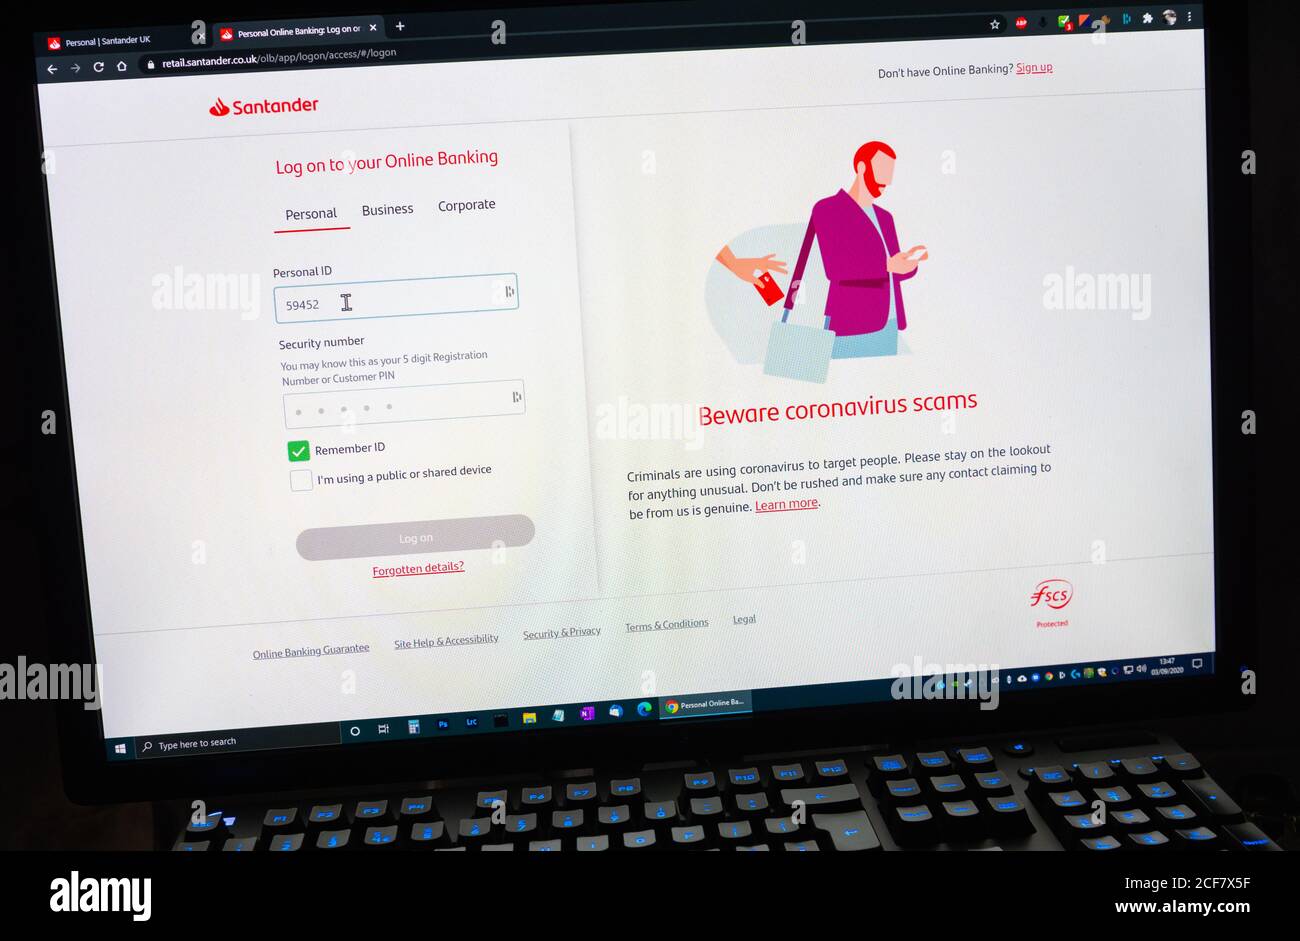 Anmeldebildschirm für Santander Online-Banking. Anmelden beim Bankkonto für das Internet-Banking. Stockfoto